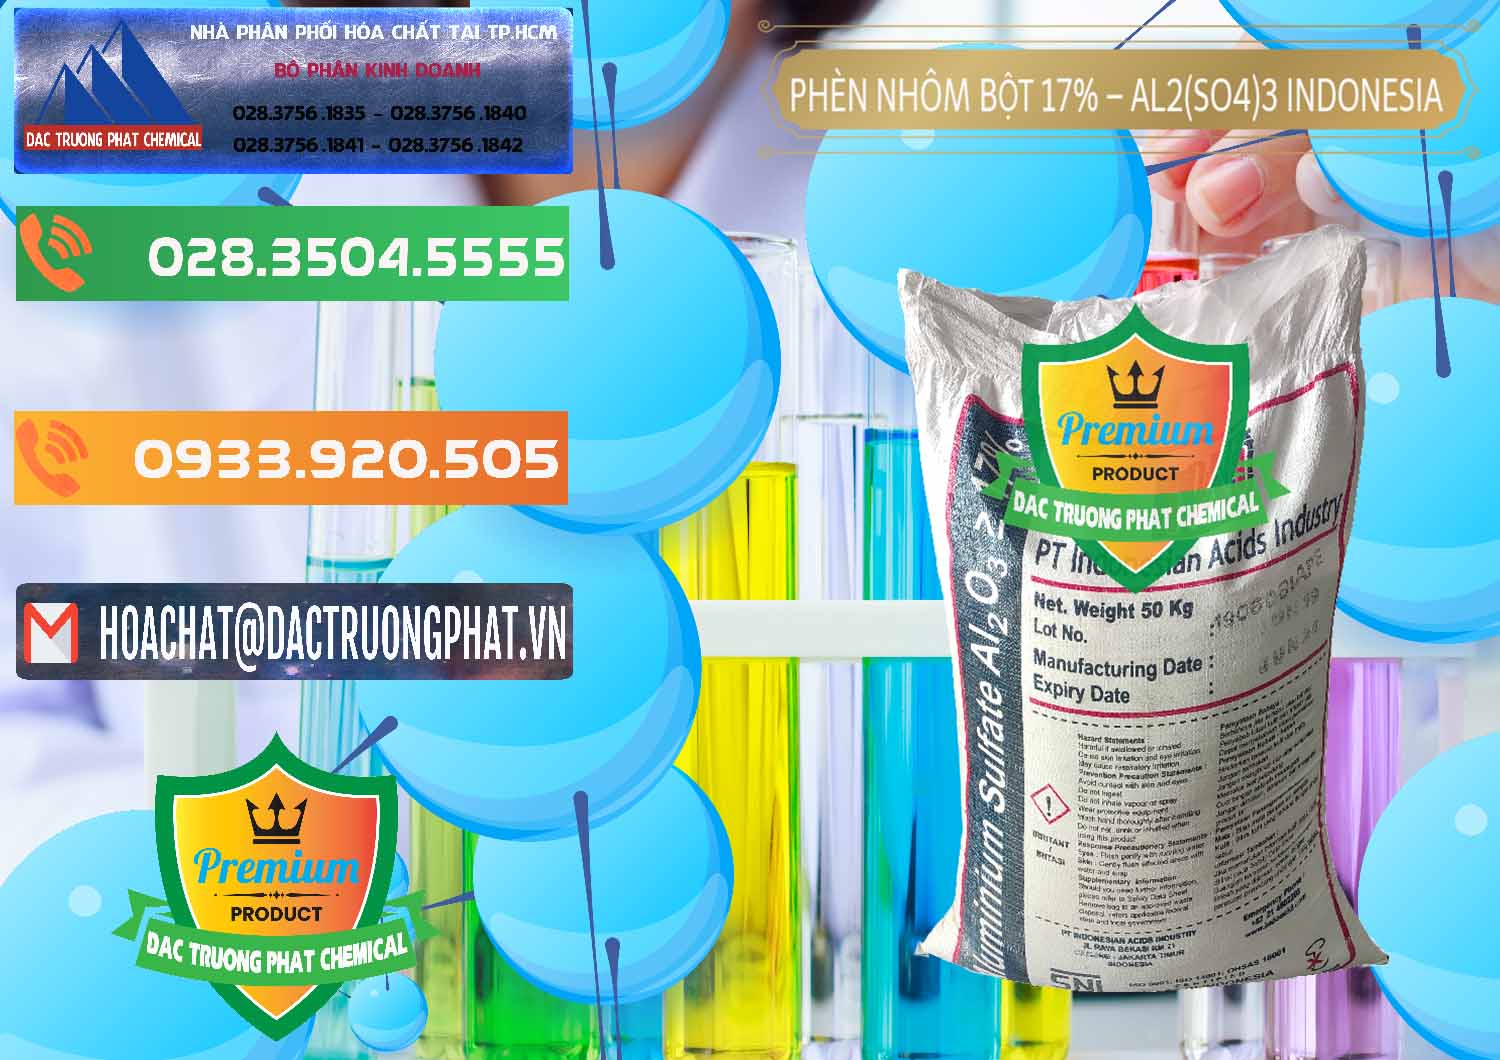 Bán - phân phối Phèn Nhôm Bột - Al2(SO4)3 17% bao 50kg Indonesia - 0112 - Cty kinh doanh - cung cấp hóa chất tại TP.HCM - hoachatxulynuoc.com.vn